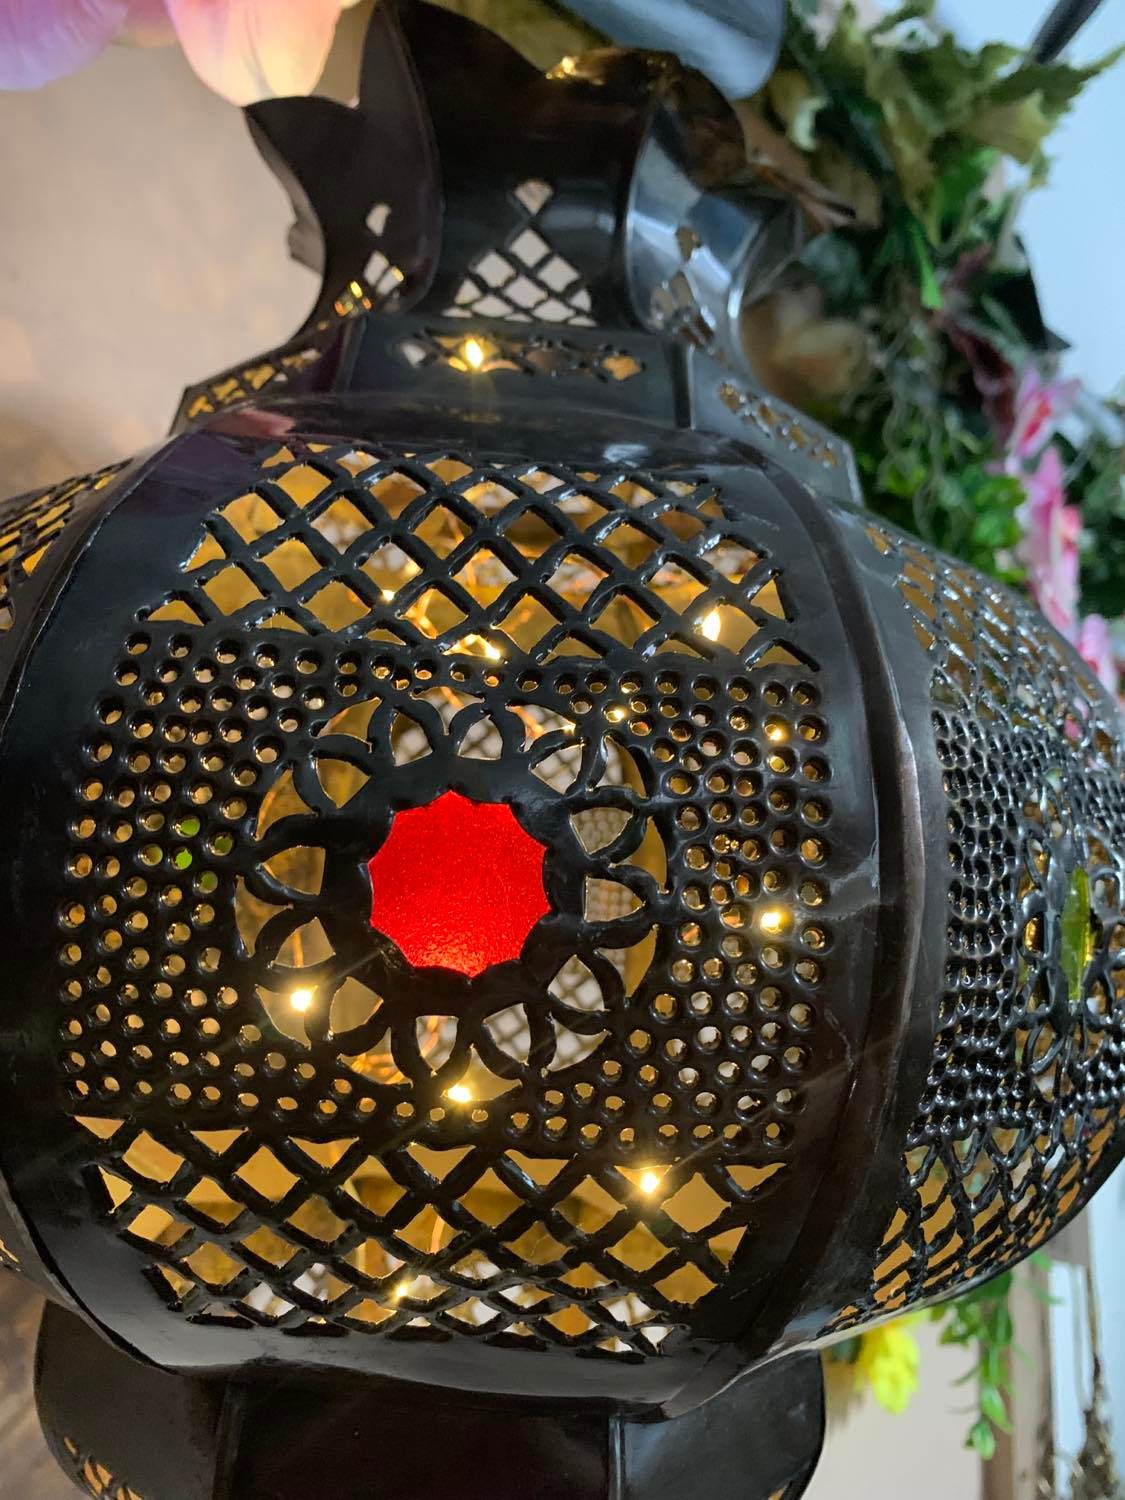 Moroccan Copper Tulip Lantern